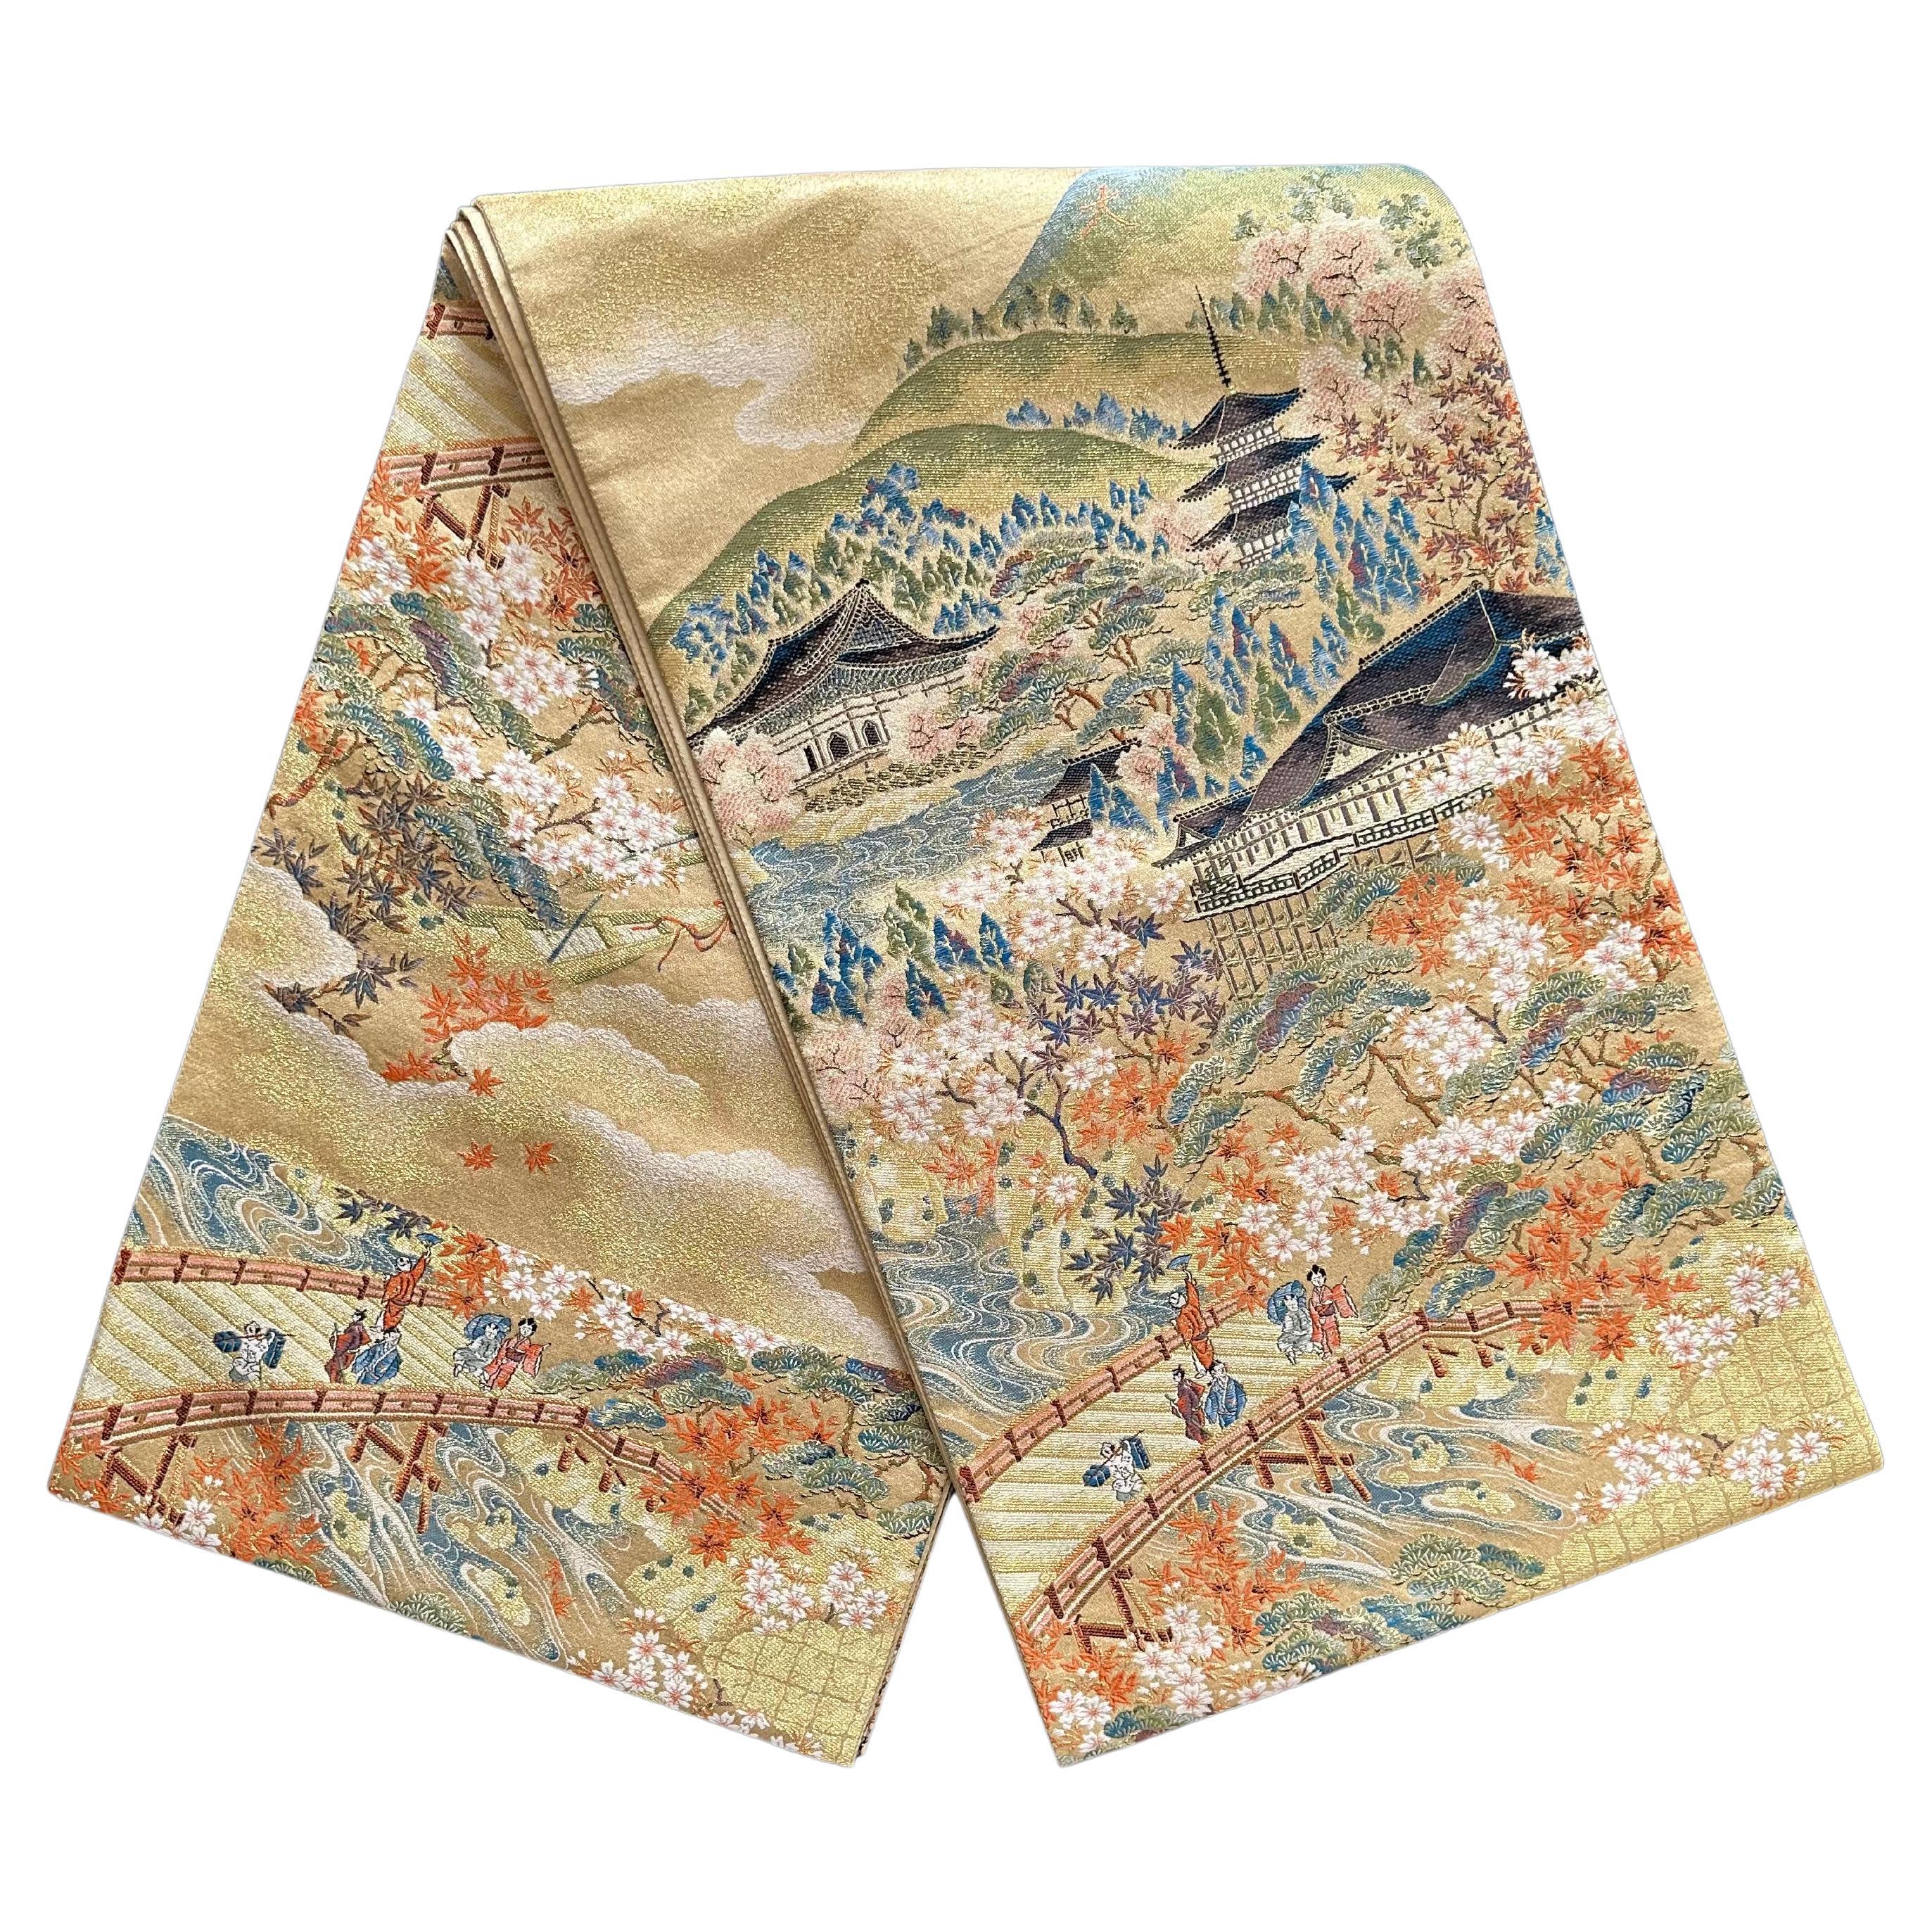 Japanese Vintage Kimono Obi, "KYOTO" selected by Kimono-Couture, Silk Textile